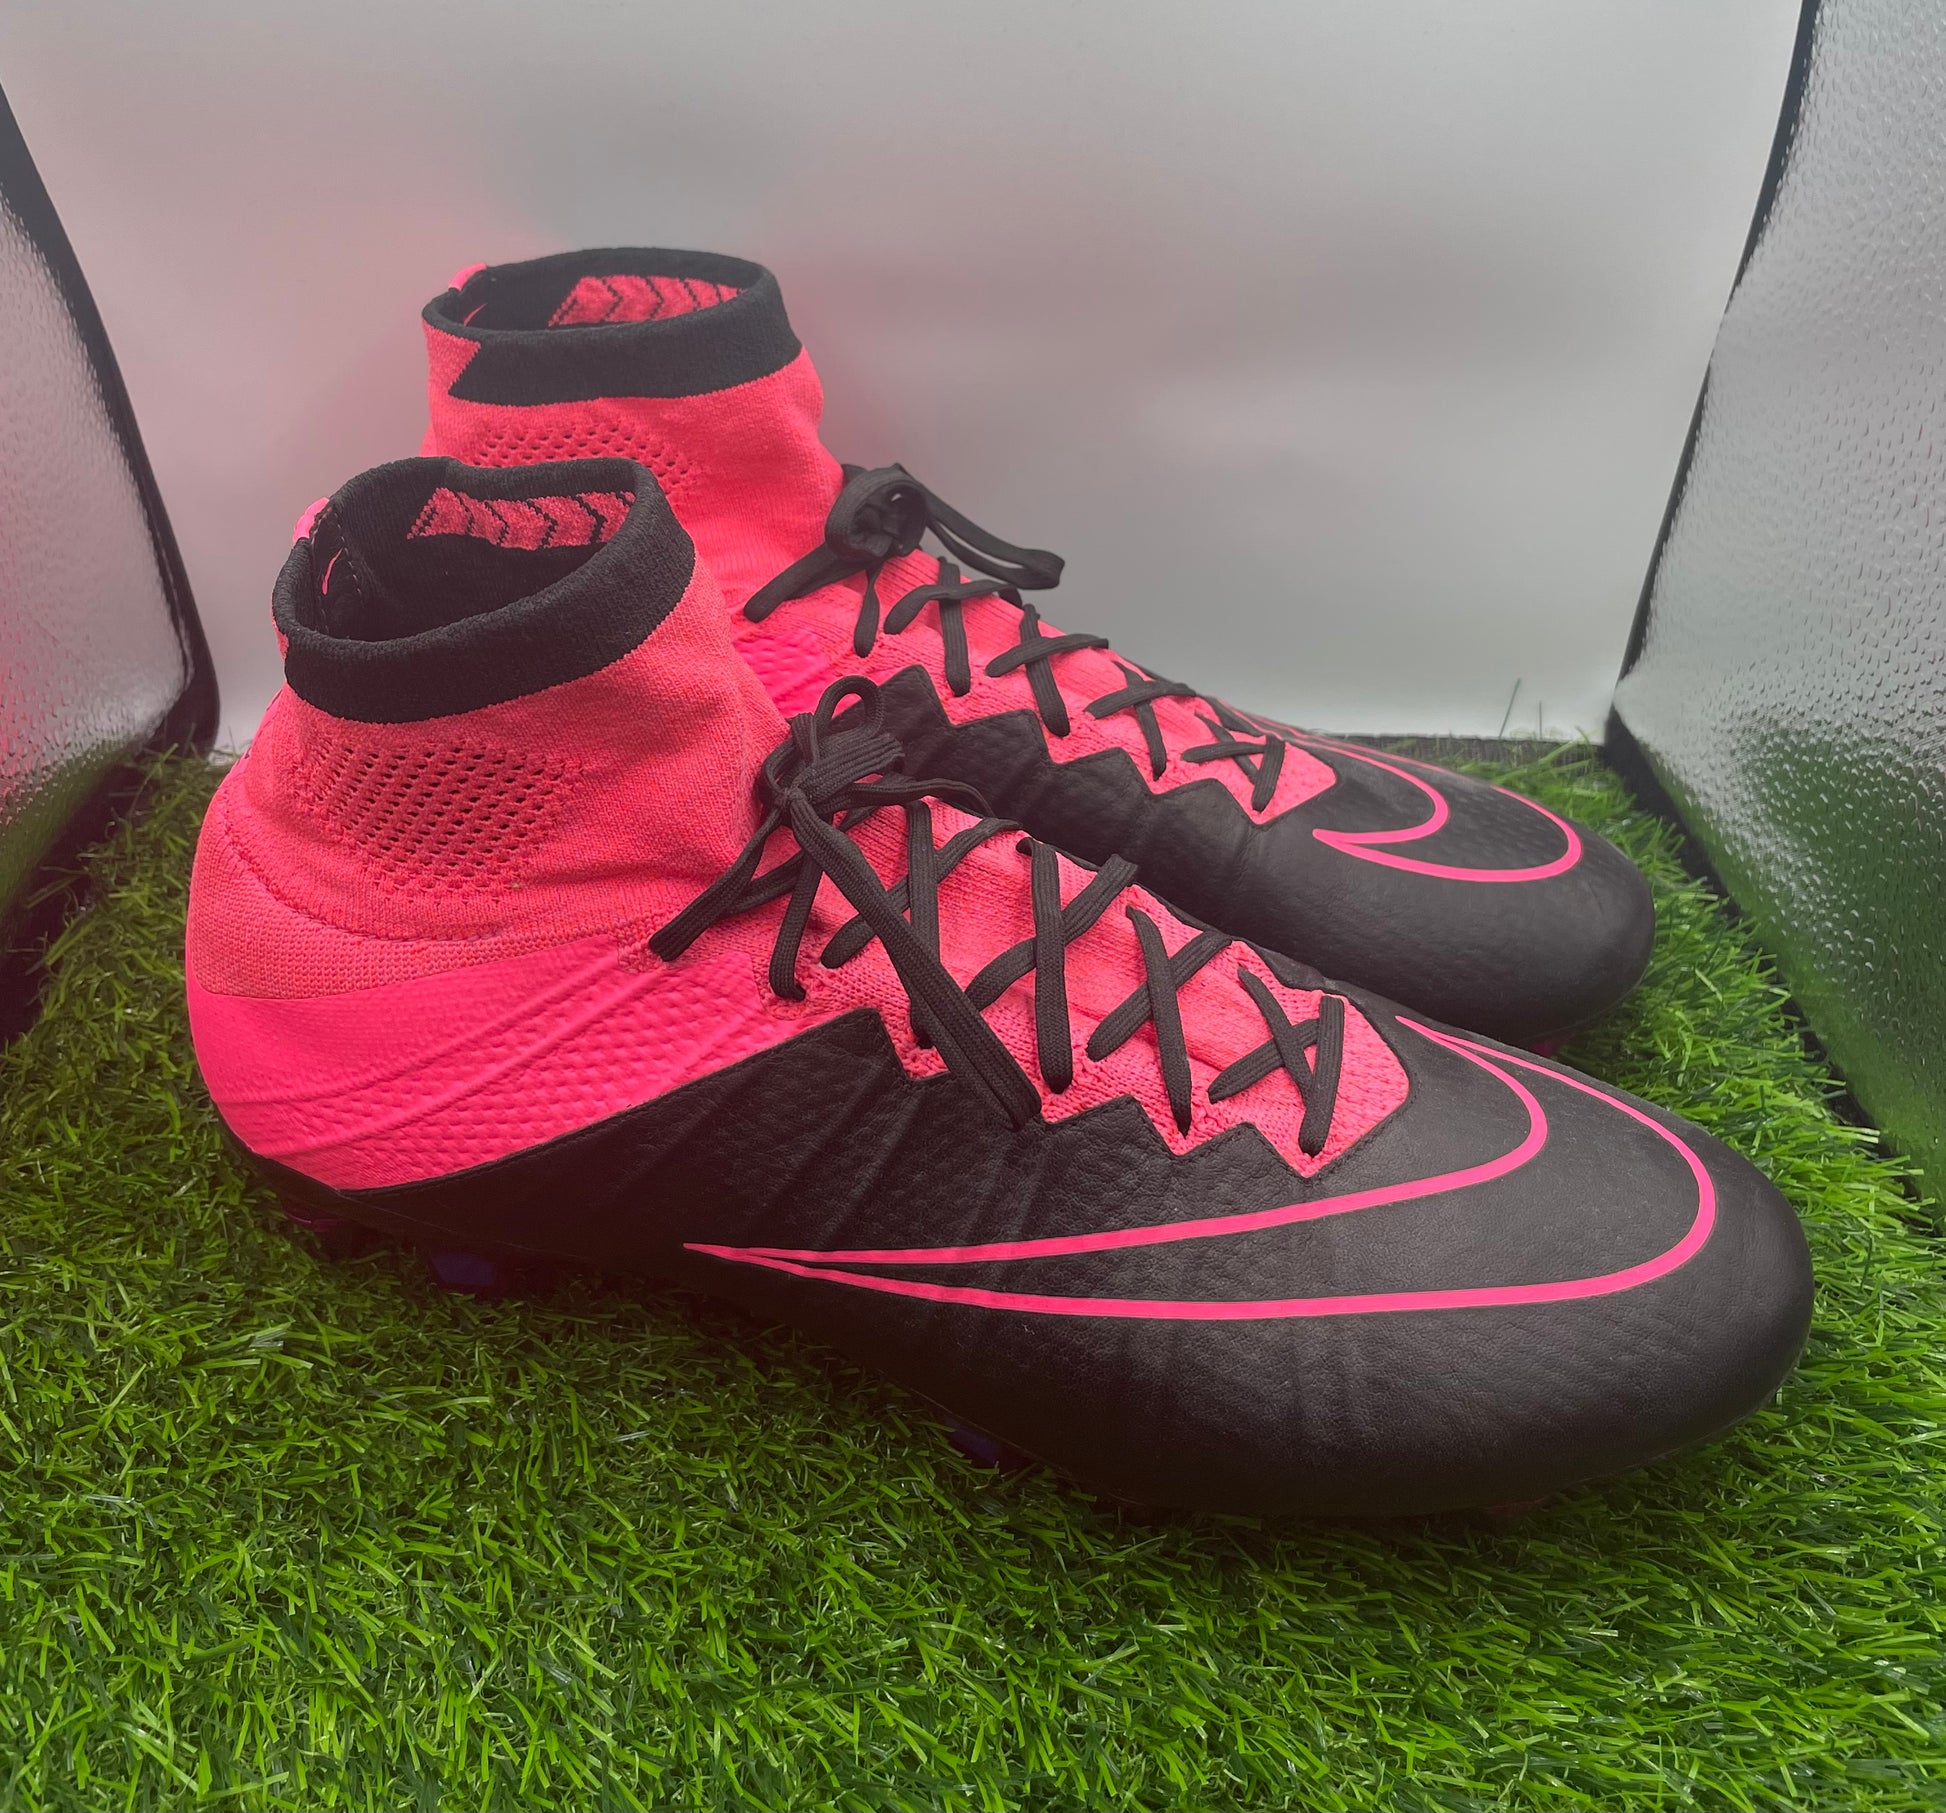 búnker la licenciatura Relacionado Nike mercurial superfly 3 pink/black SG – Beyond boots